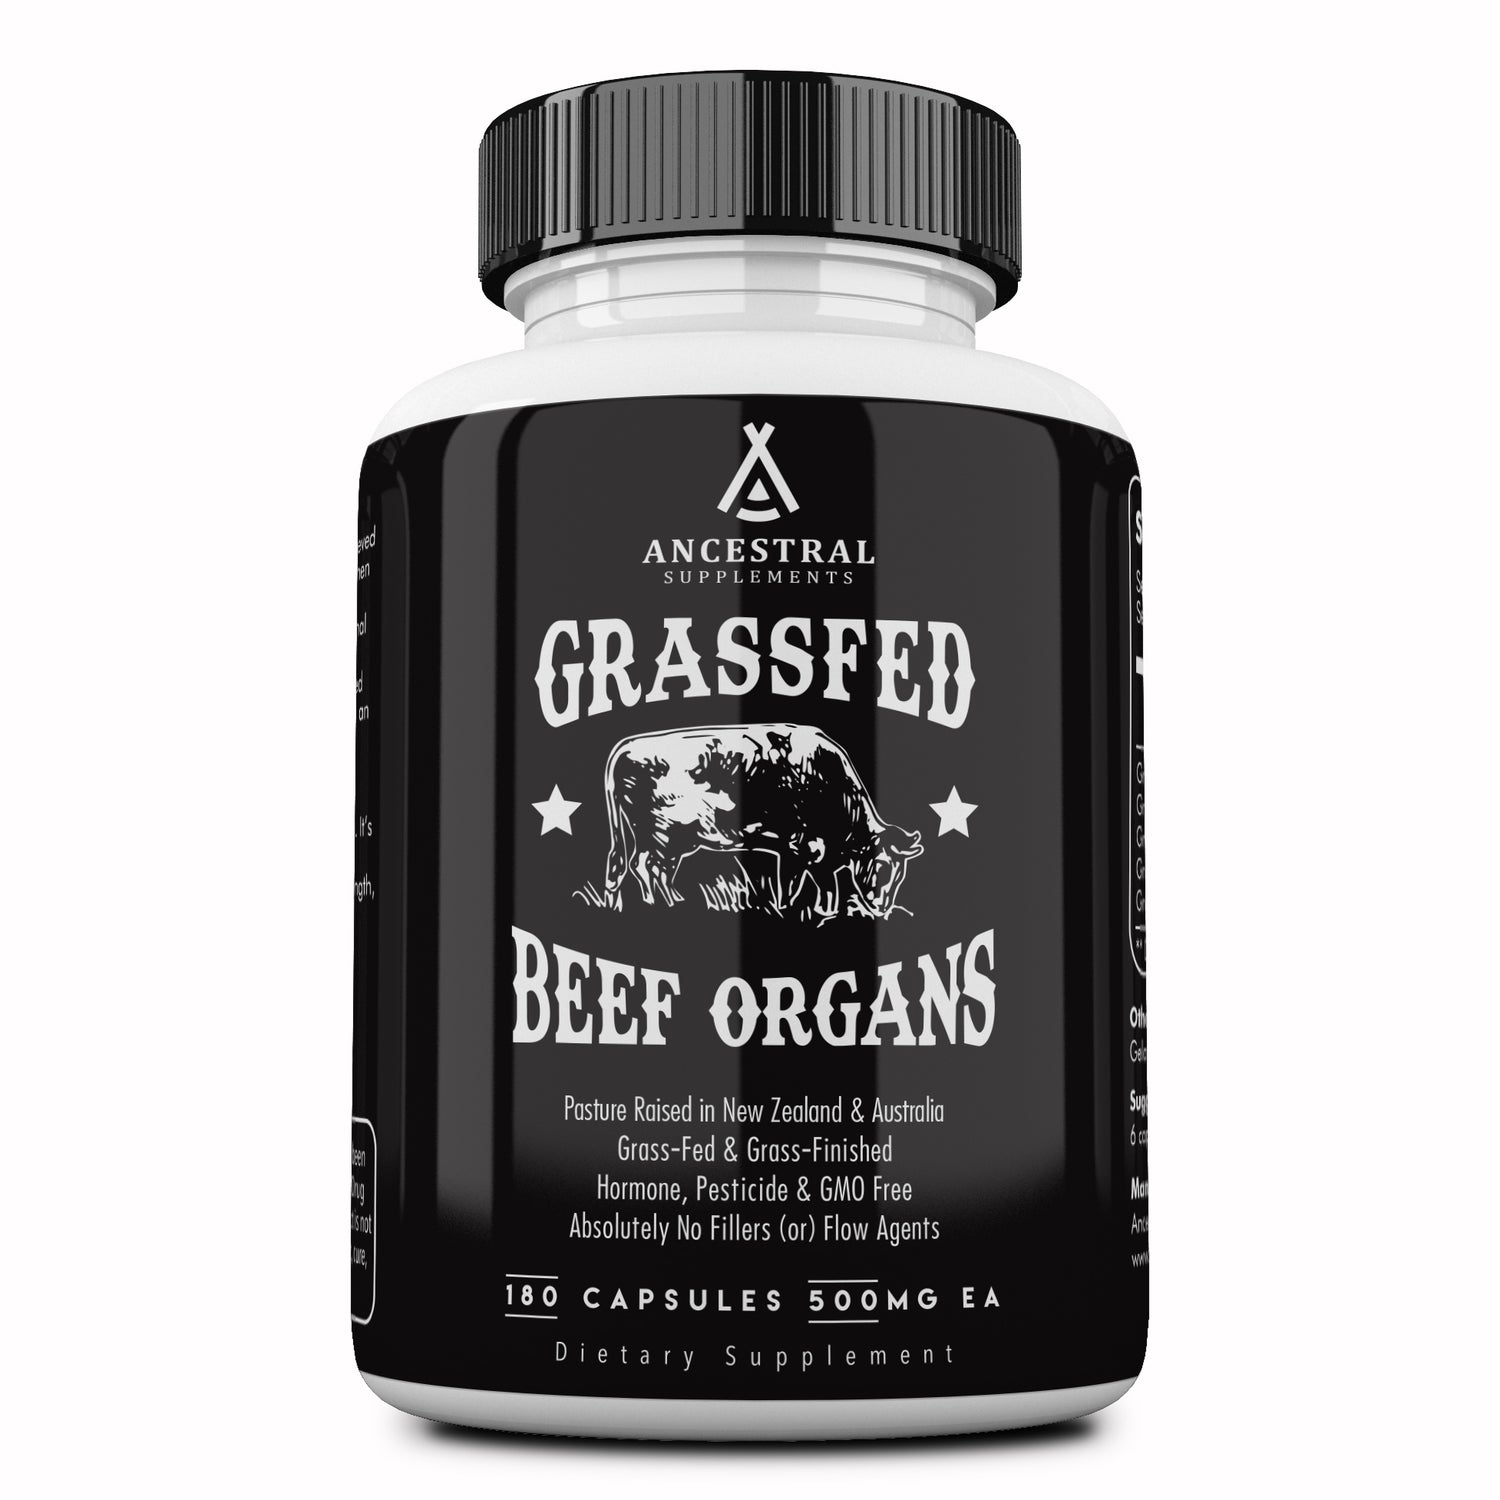 Ancestral Supplements- Ancestral Supplements Grassfed Beef Organs